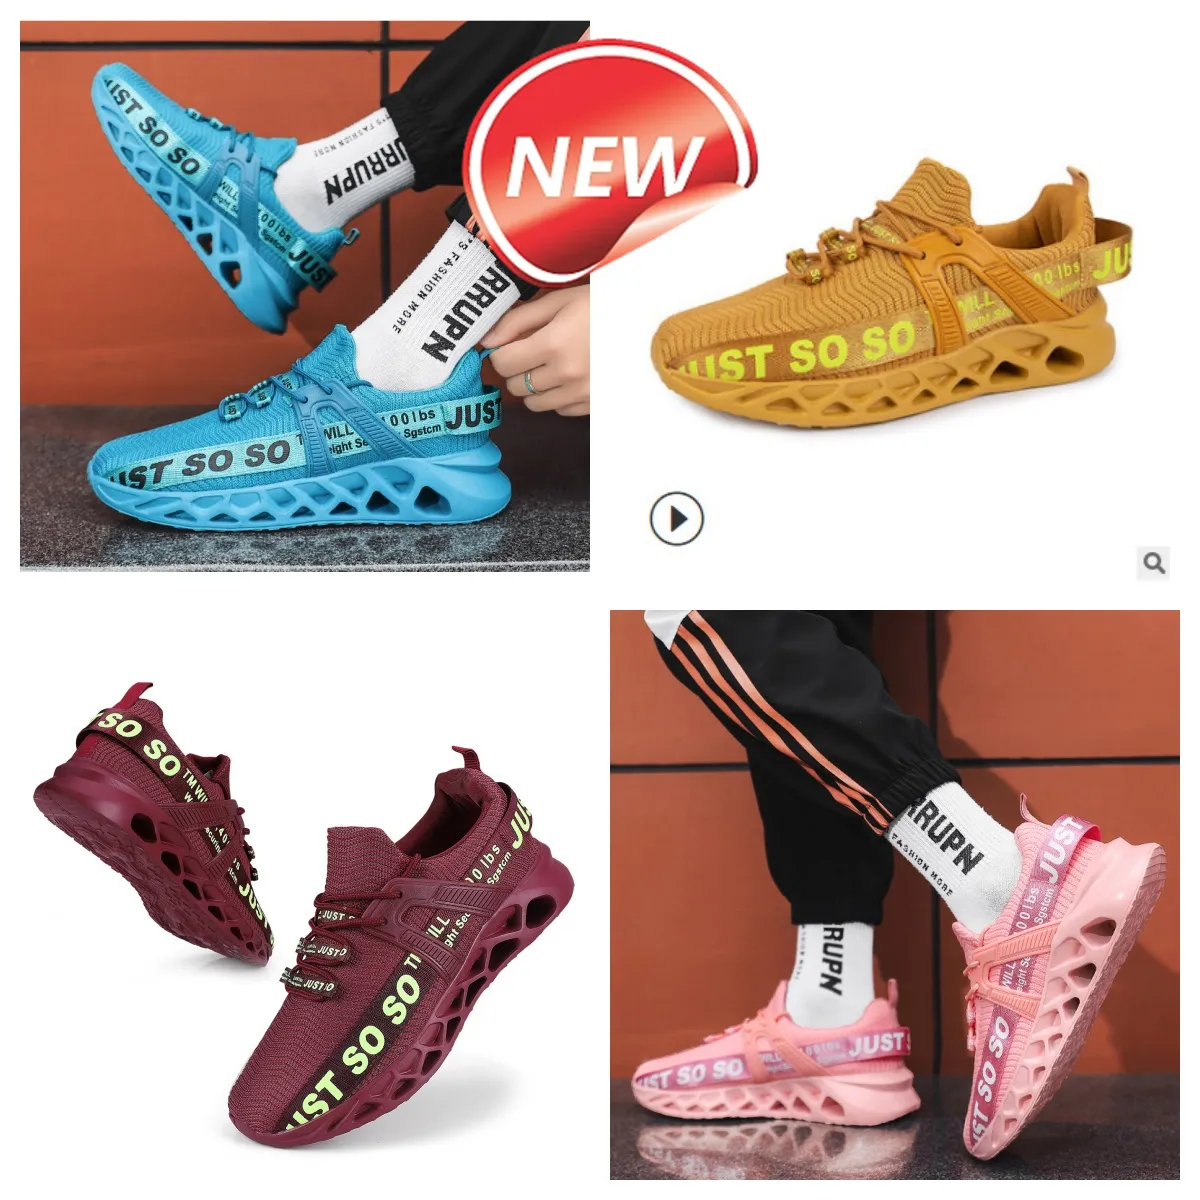 Erkekler Düzenli Ayakkabı Büyük Boyutlu Spor Ayakkabıları Koşu Ayakkabıları Renkli Gai Renkli Hafif Boş Zaman Yeni Varış Sevimli Güzel Şeker Renk 35-48 Eur